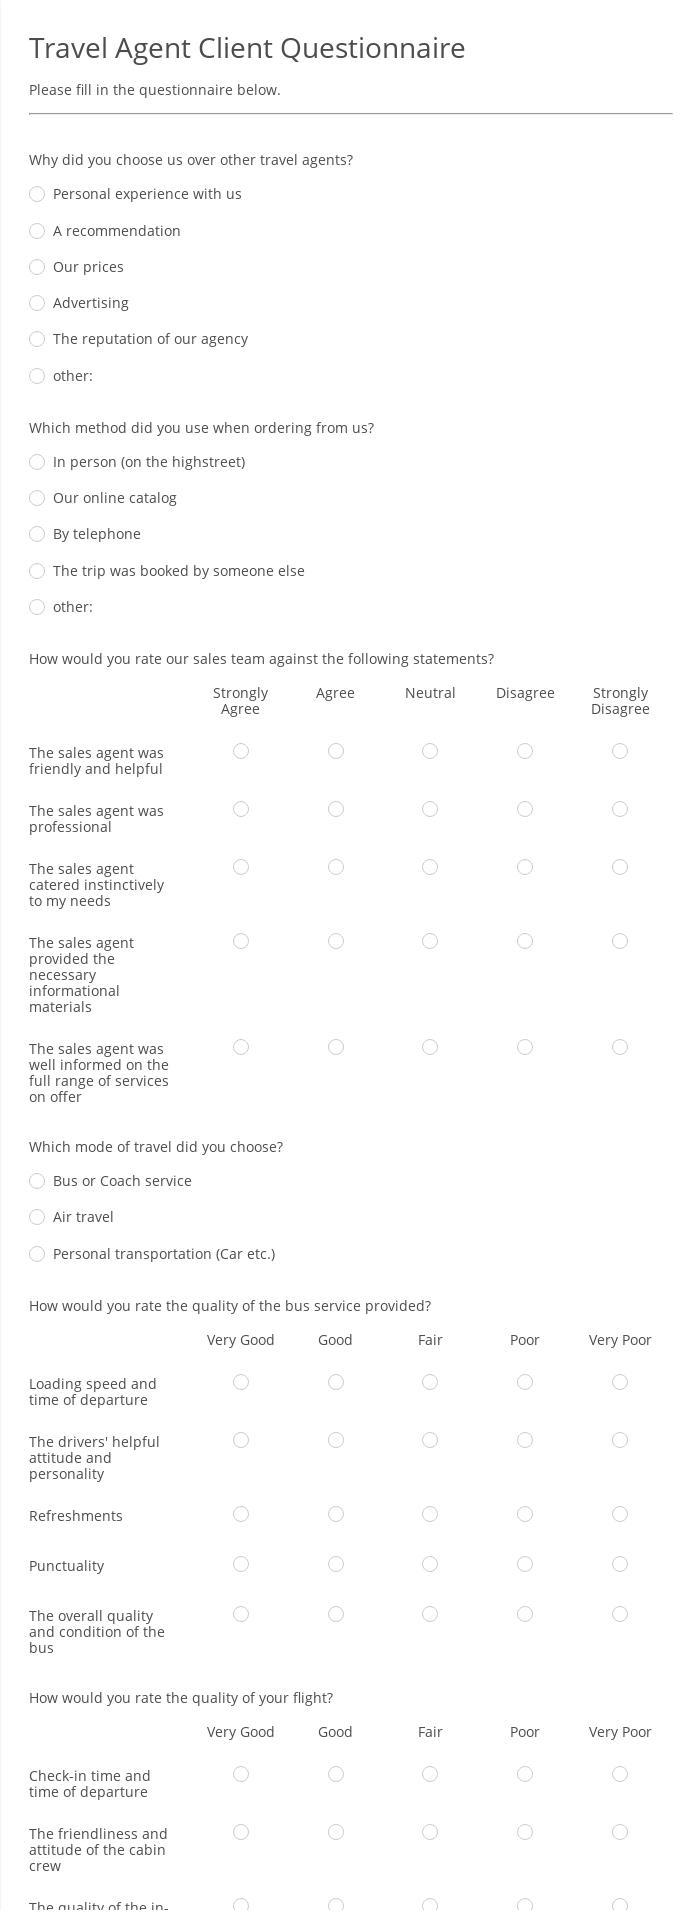 Travel Agent Client Questionnaire